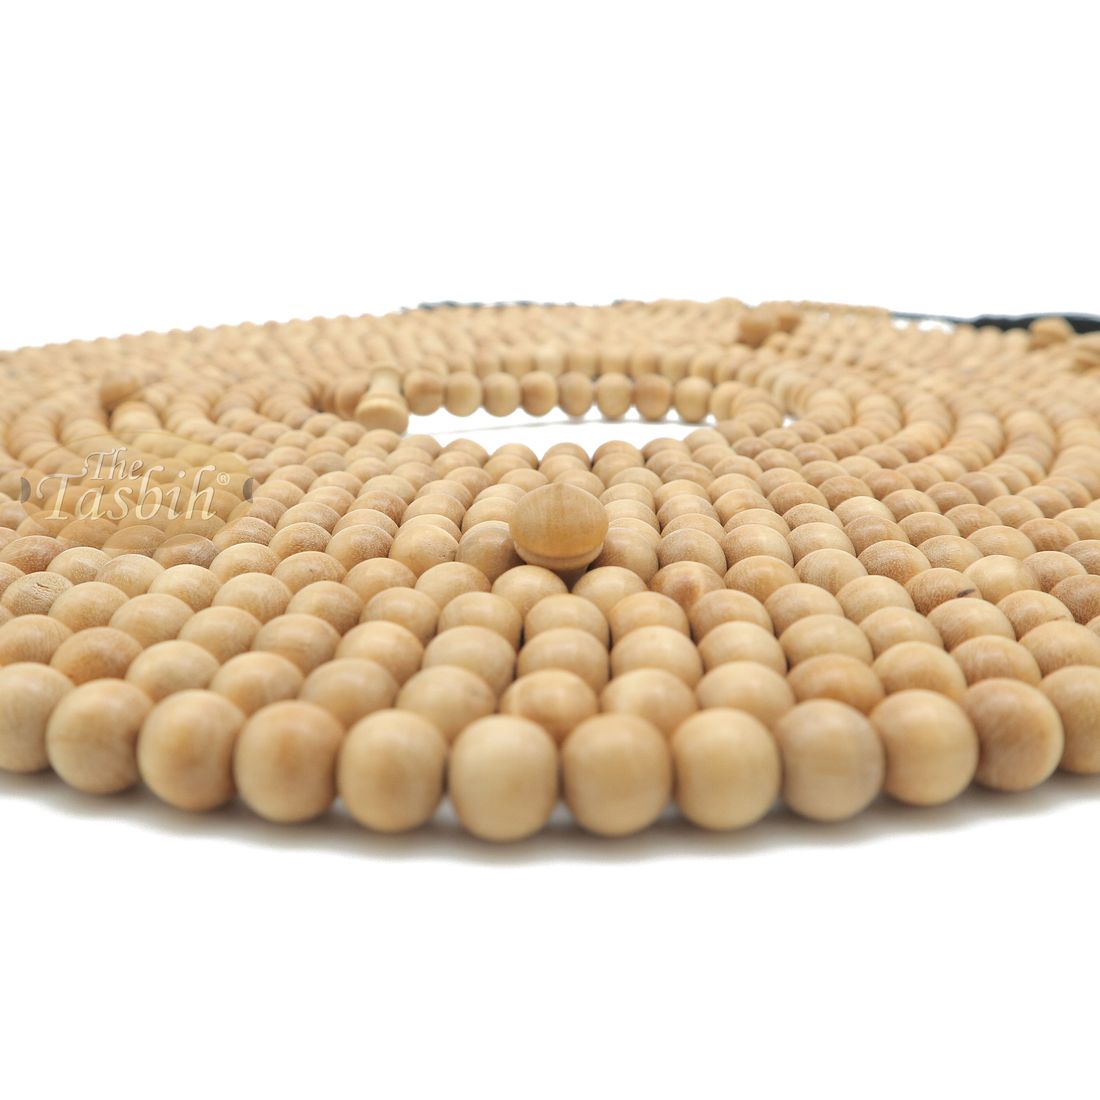 1000-Bead Citrus Wood (kemuning) Tasbih – 8mm Prayer Beads – Subha Misbaha with Beautiful Black Tassels